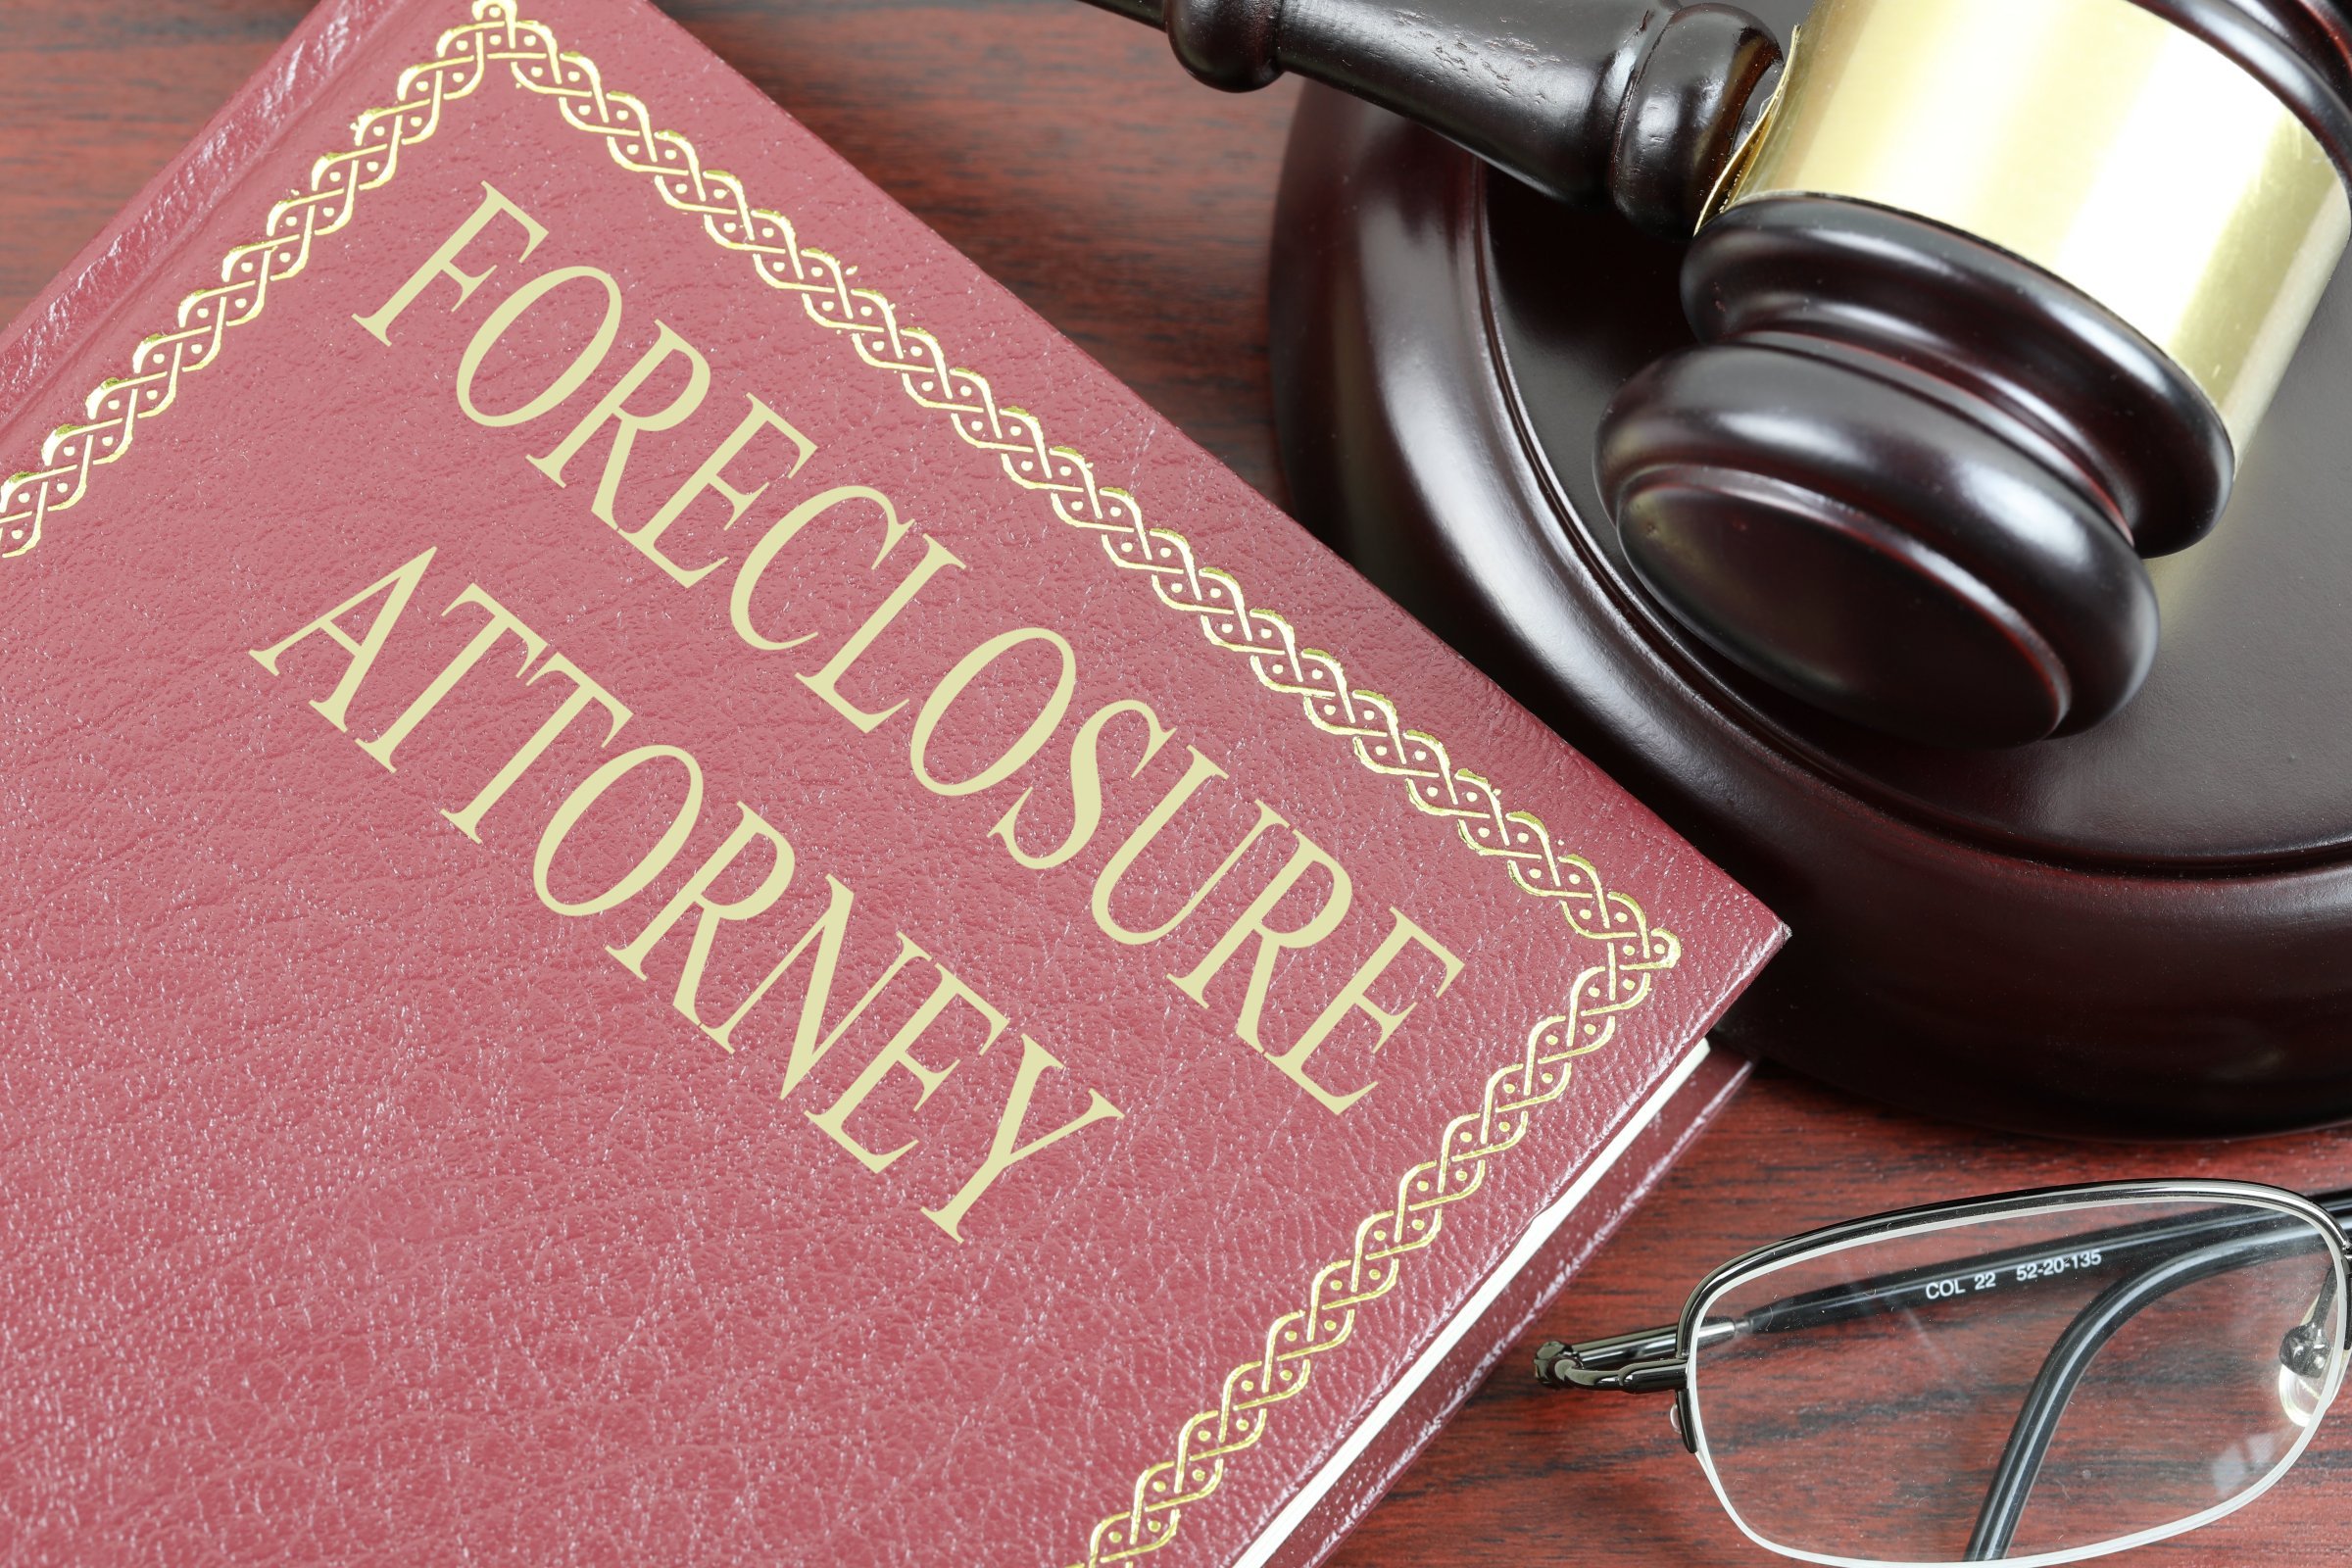 foreclosure attorney